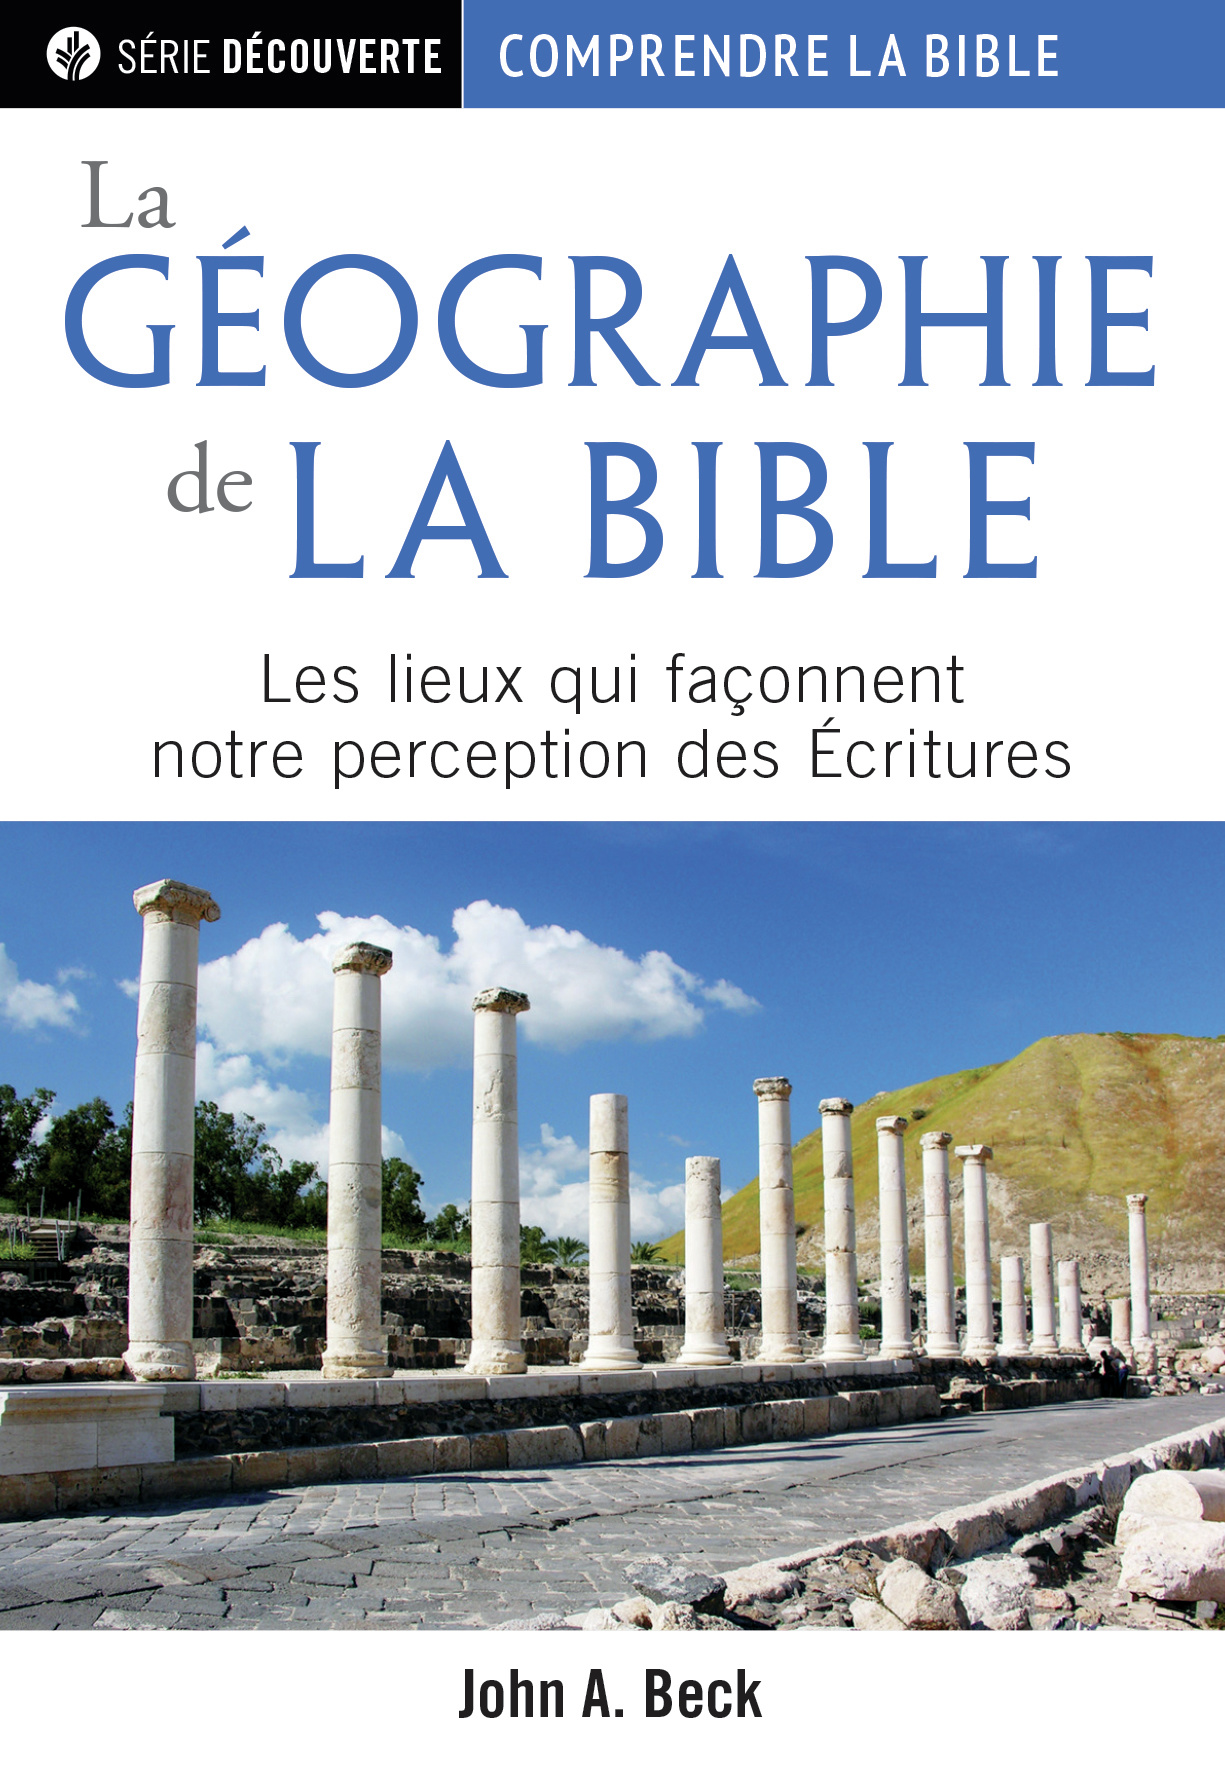 Géographie de la Bible (La) - Les lieux qui façonnent notre perception des Écritures [brochure NPQ série découverte - Comprendre